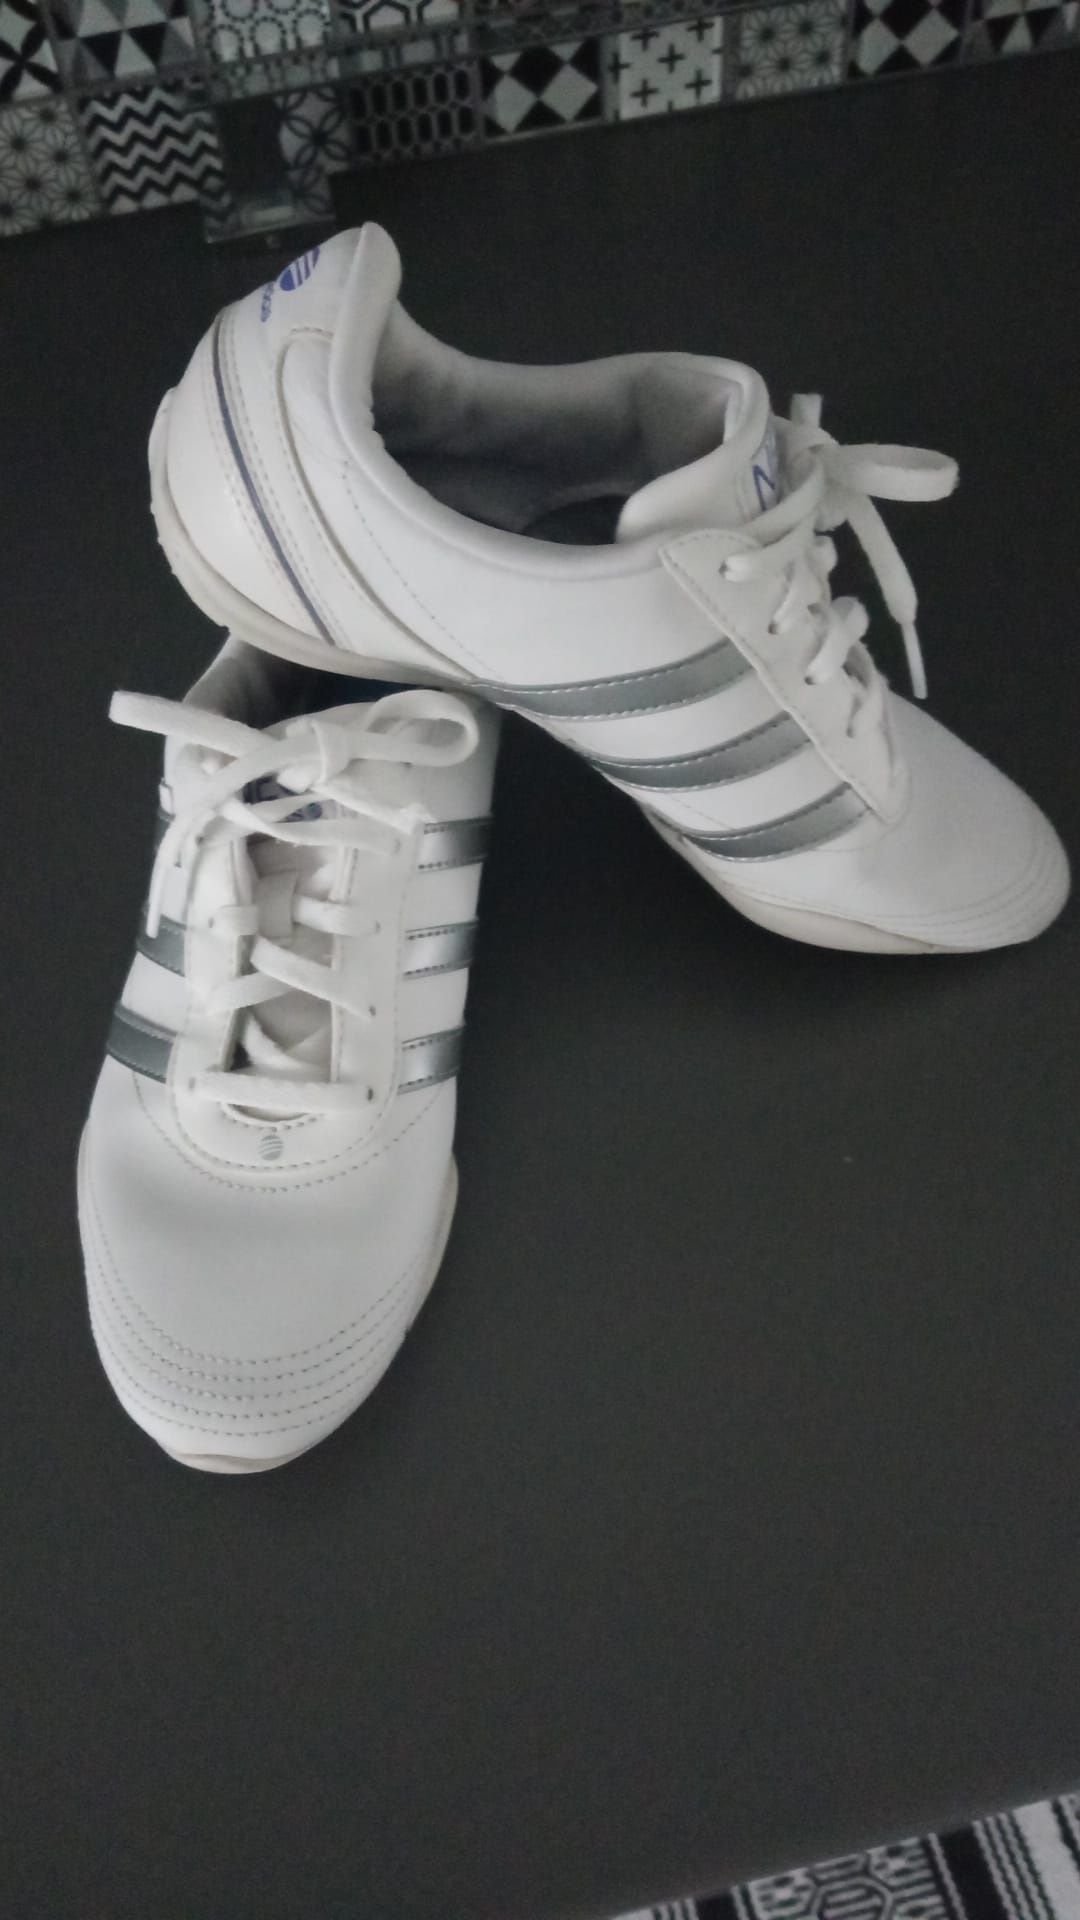 Buty sportowe Adidas r. 38.5 jak nowe